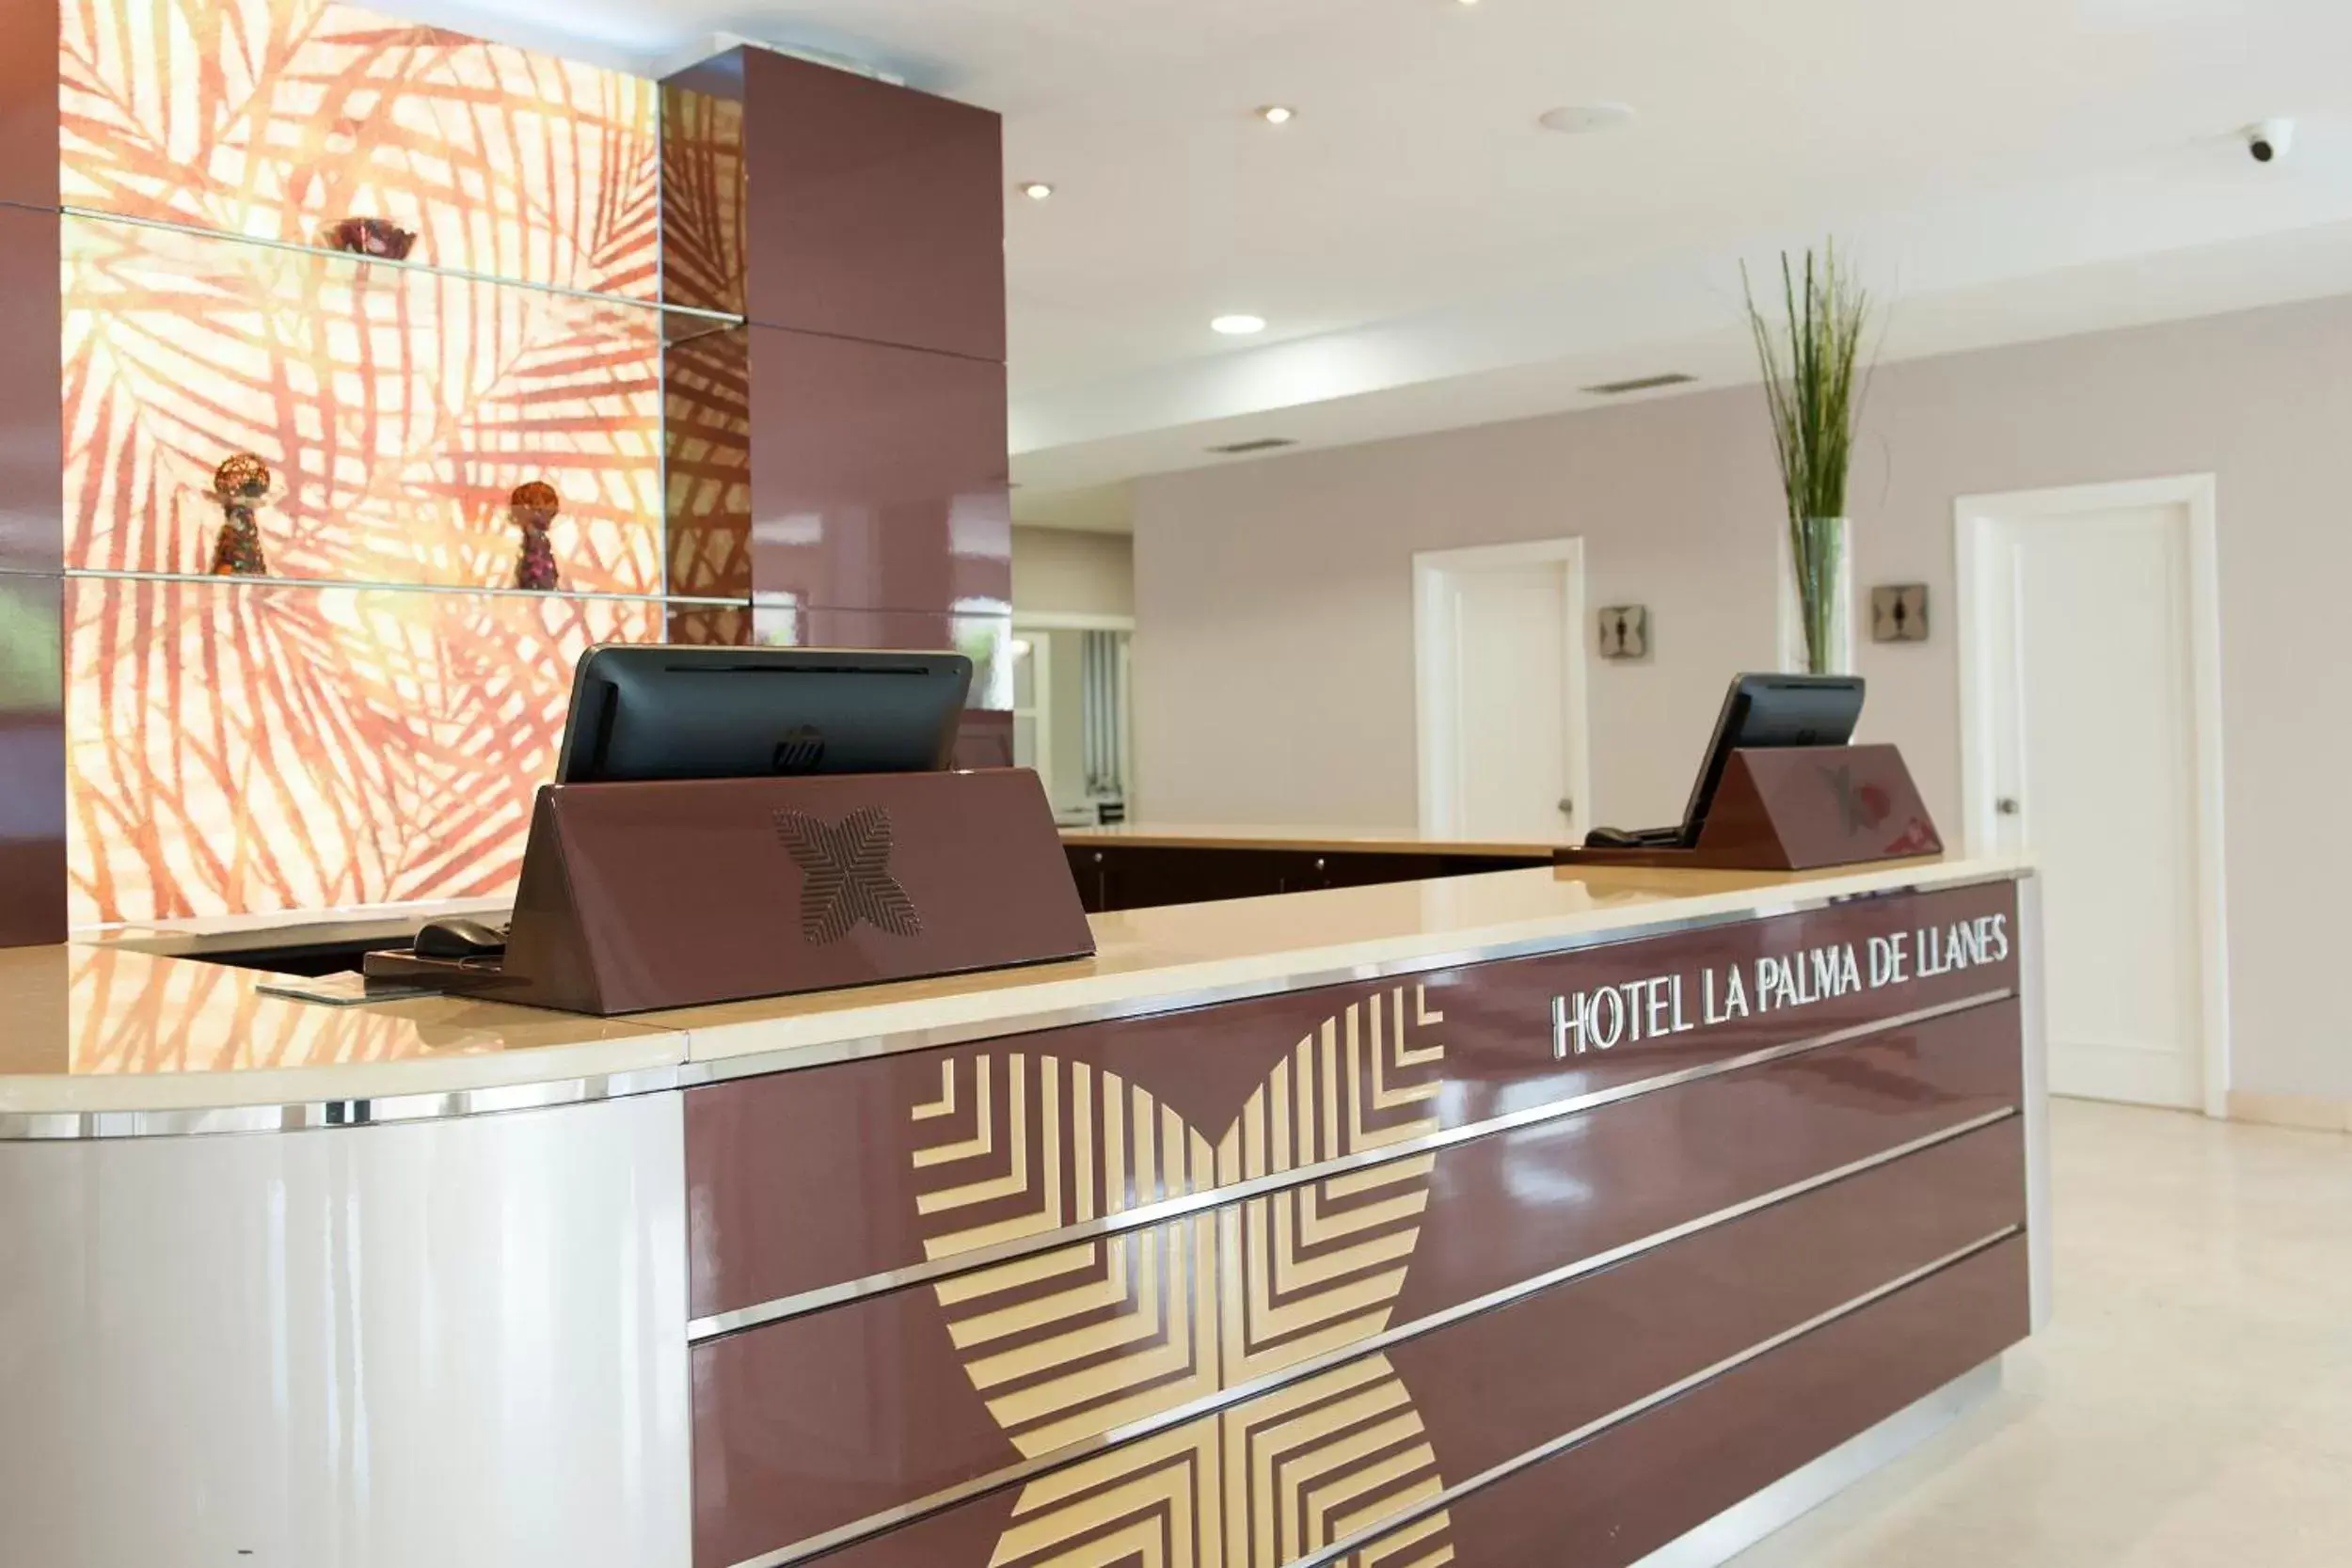 Lobby or reception, Lobby/Reception in Hotel La Palma de Llanes